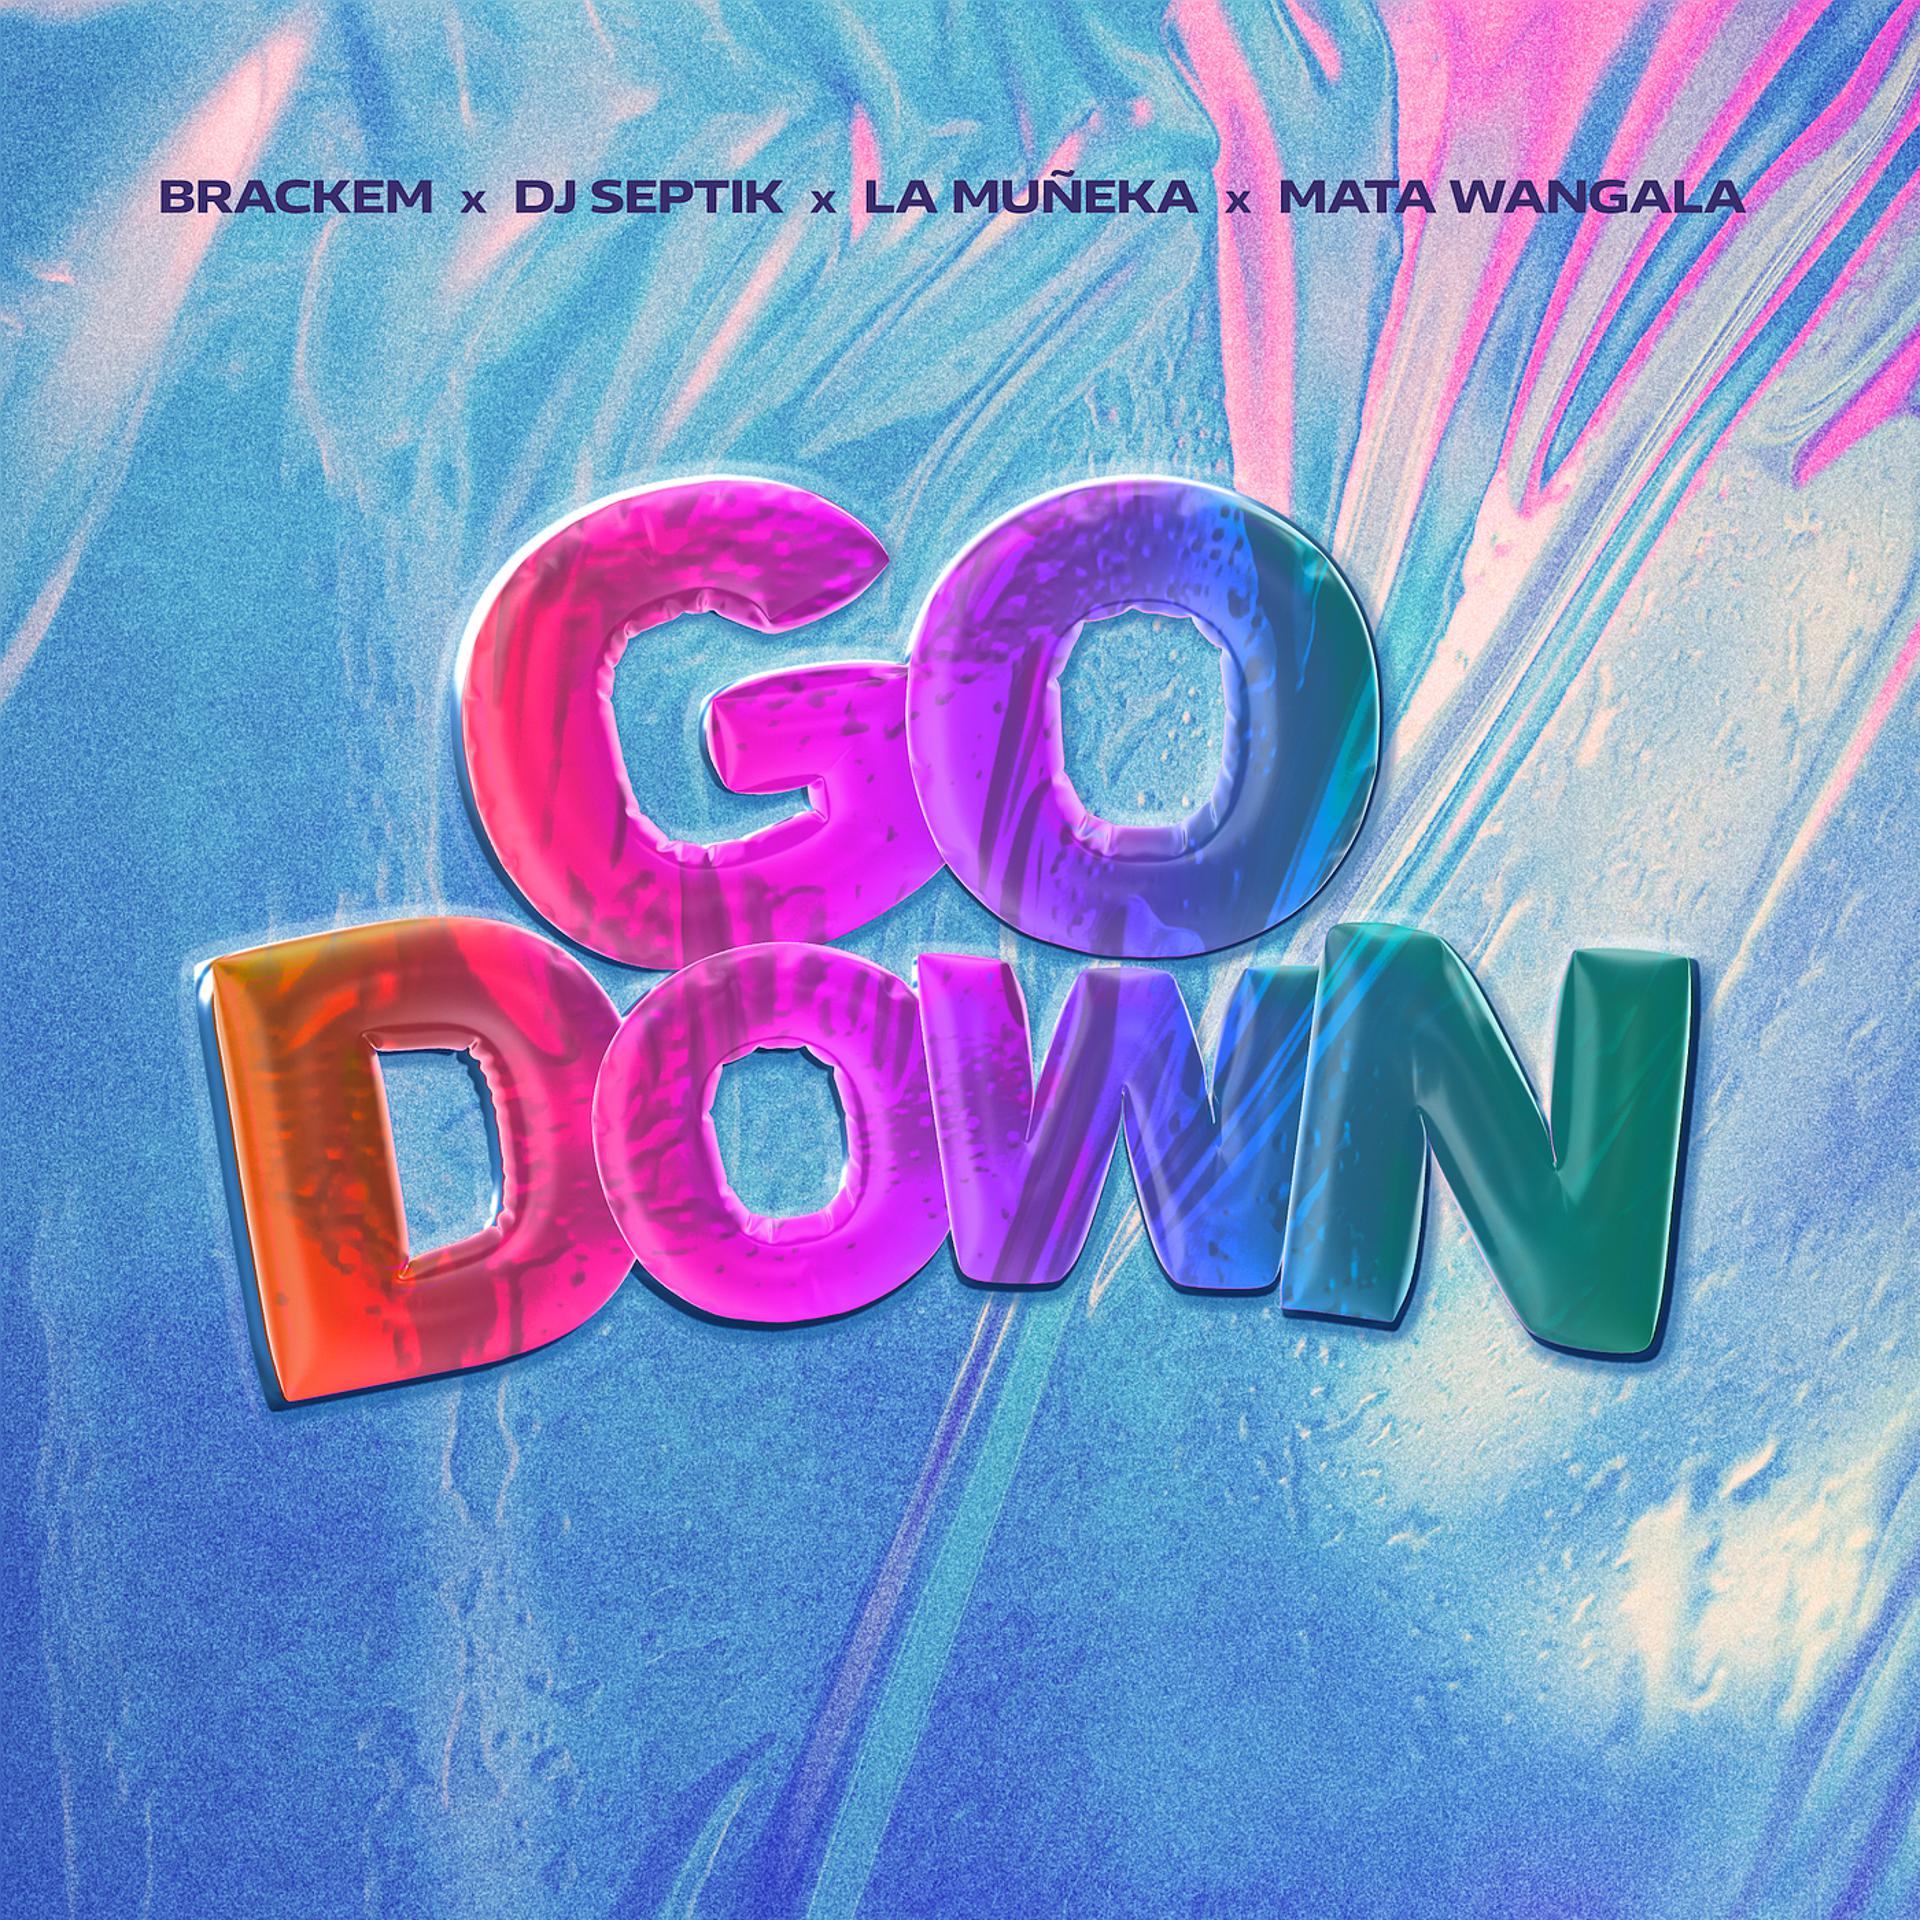 Постер альбома Go Down